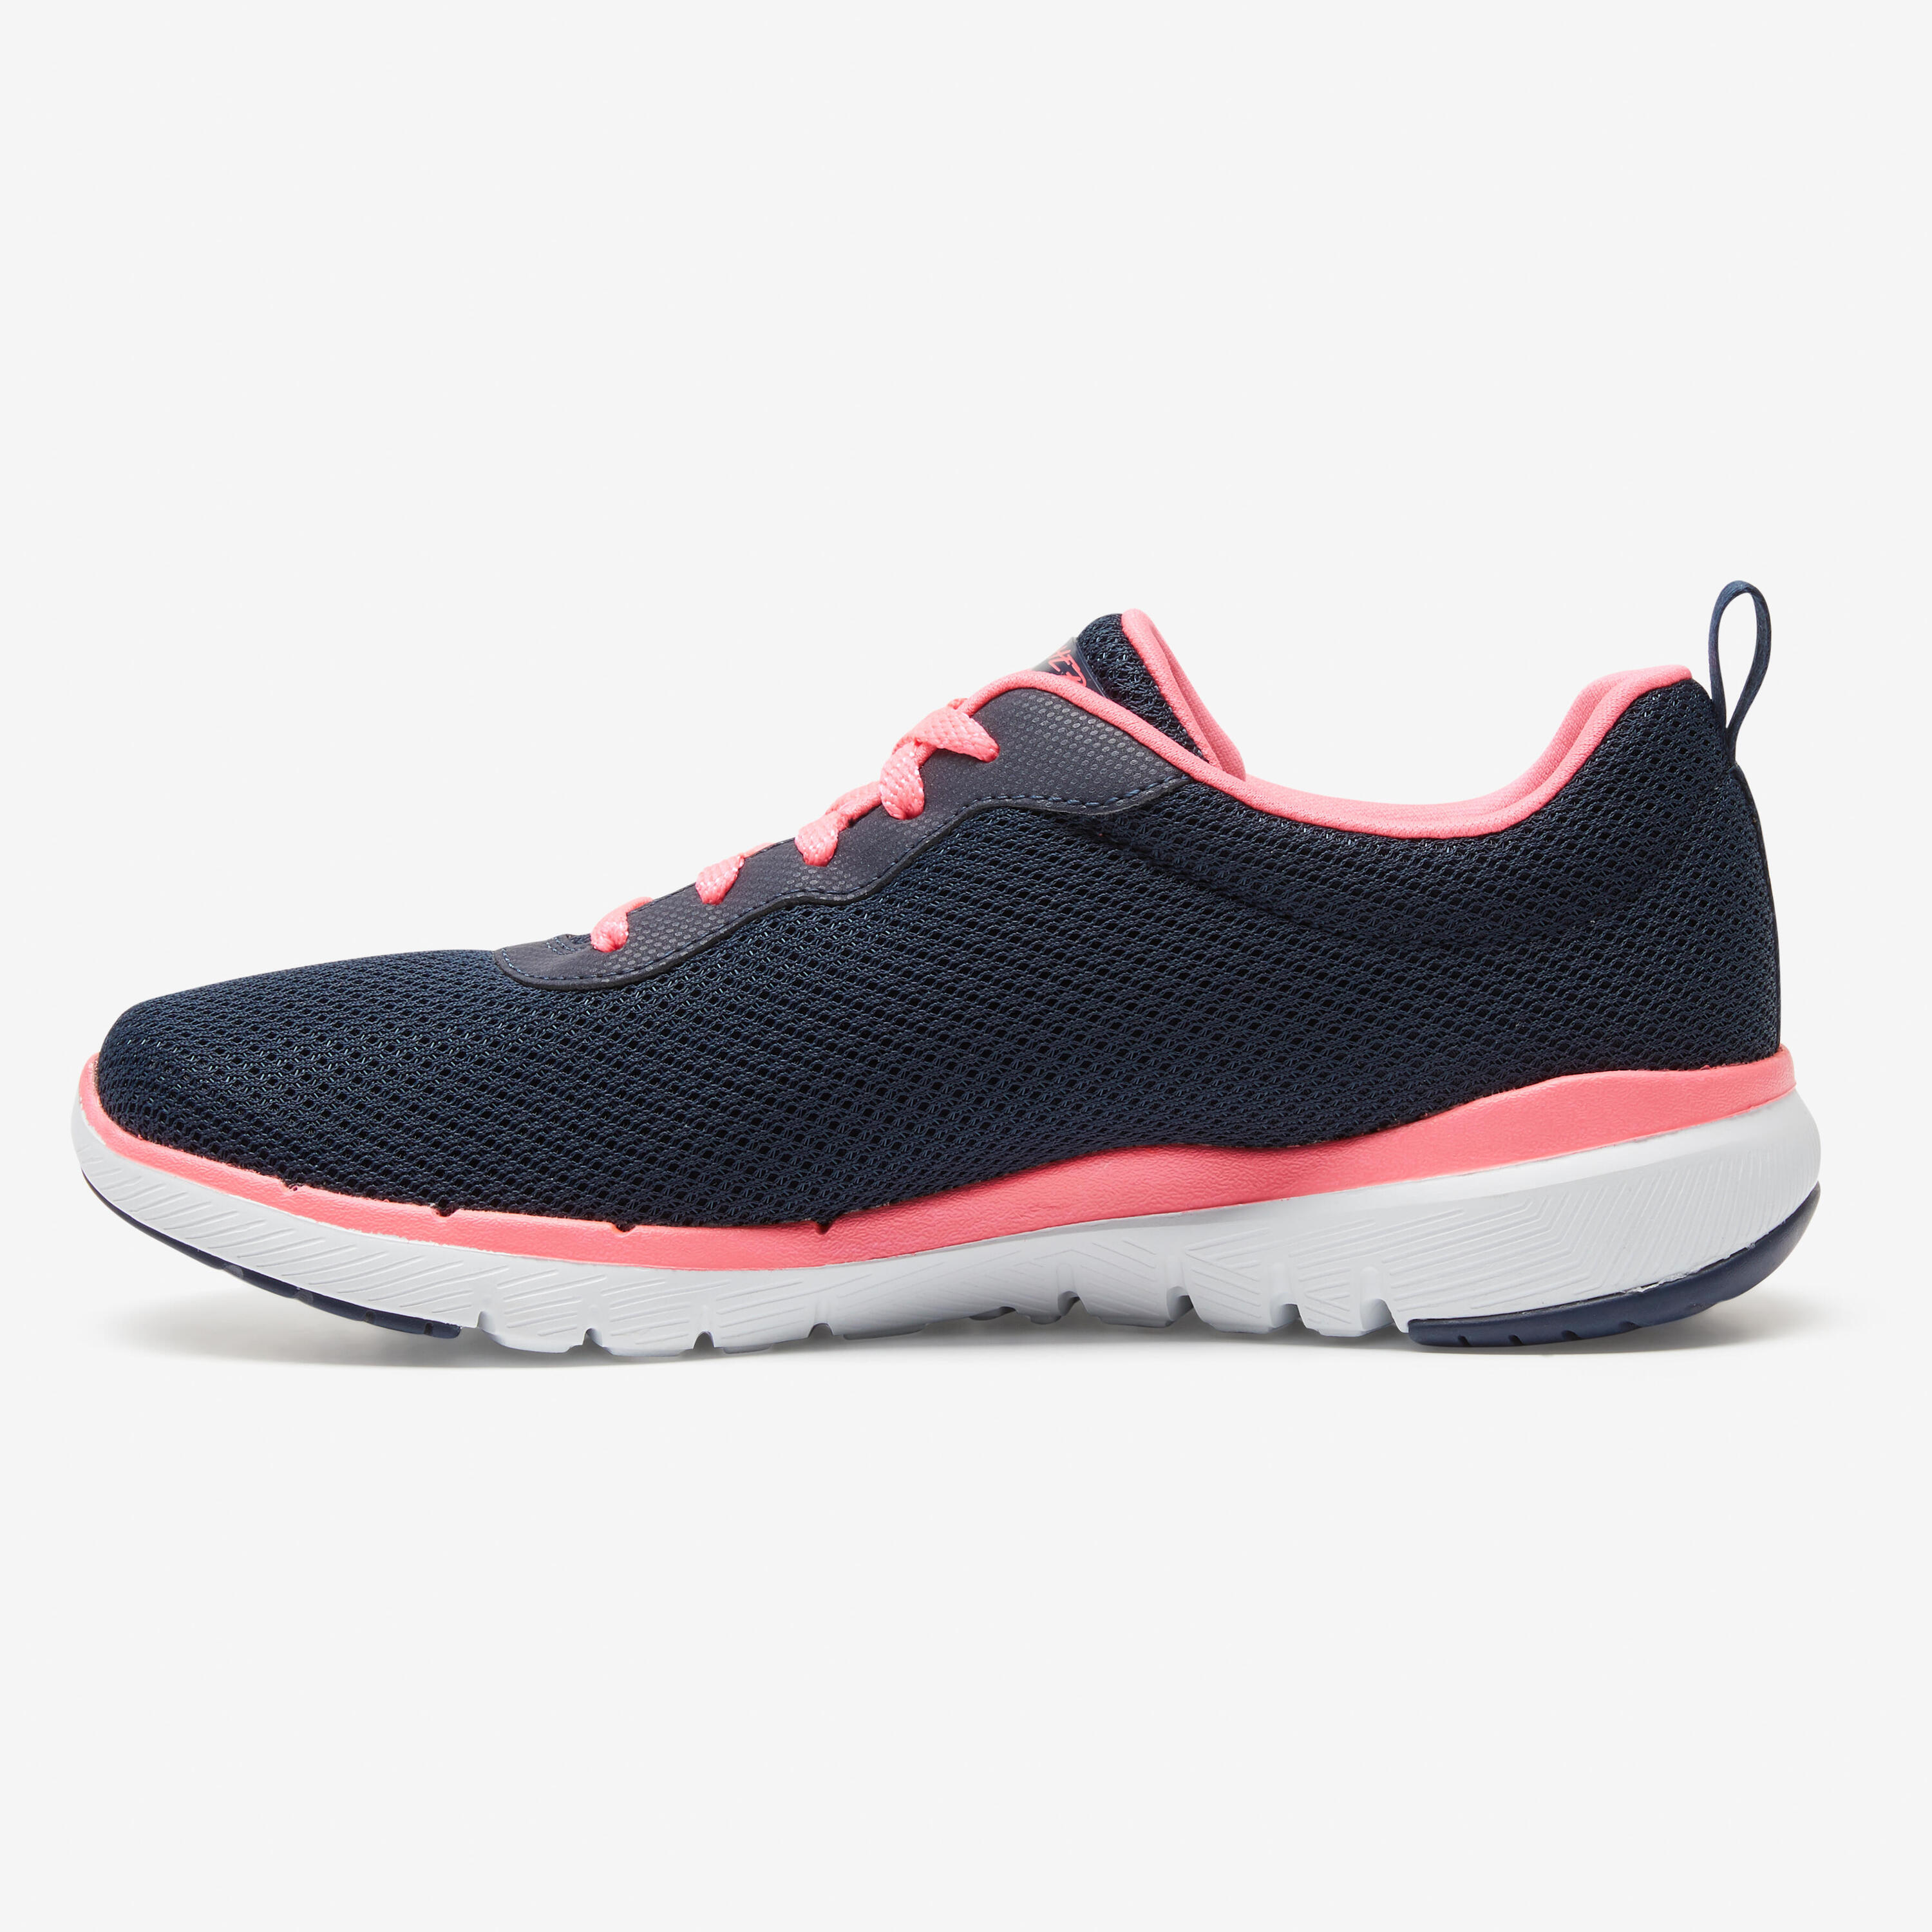 Flex Appeal Women's Fitness Walking Shoes - Blue/Pink 5/7